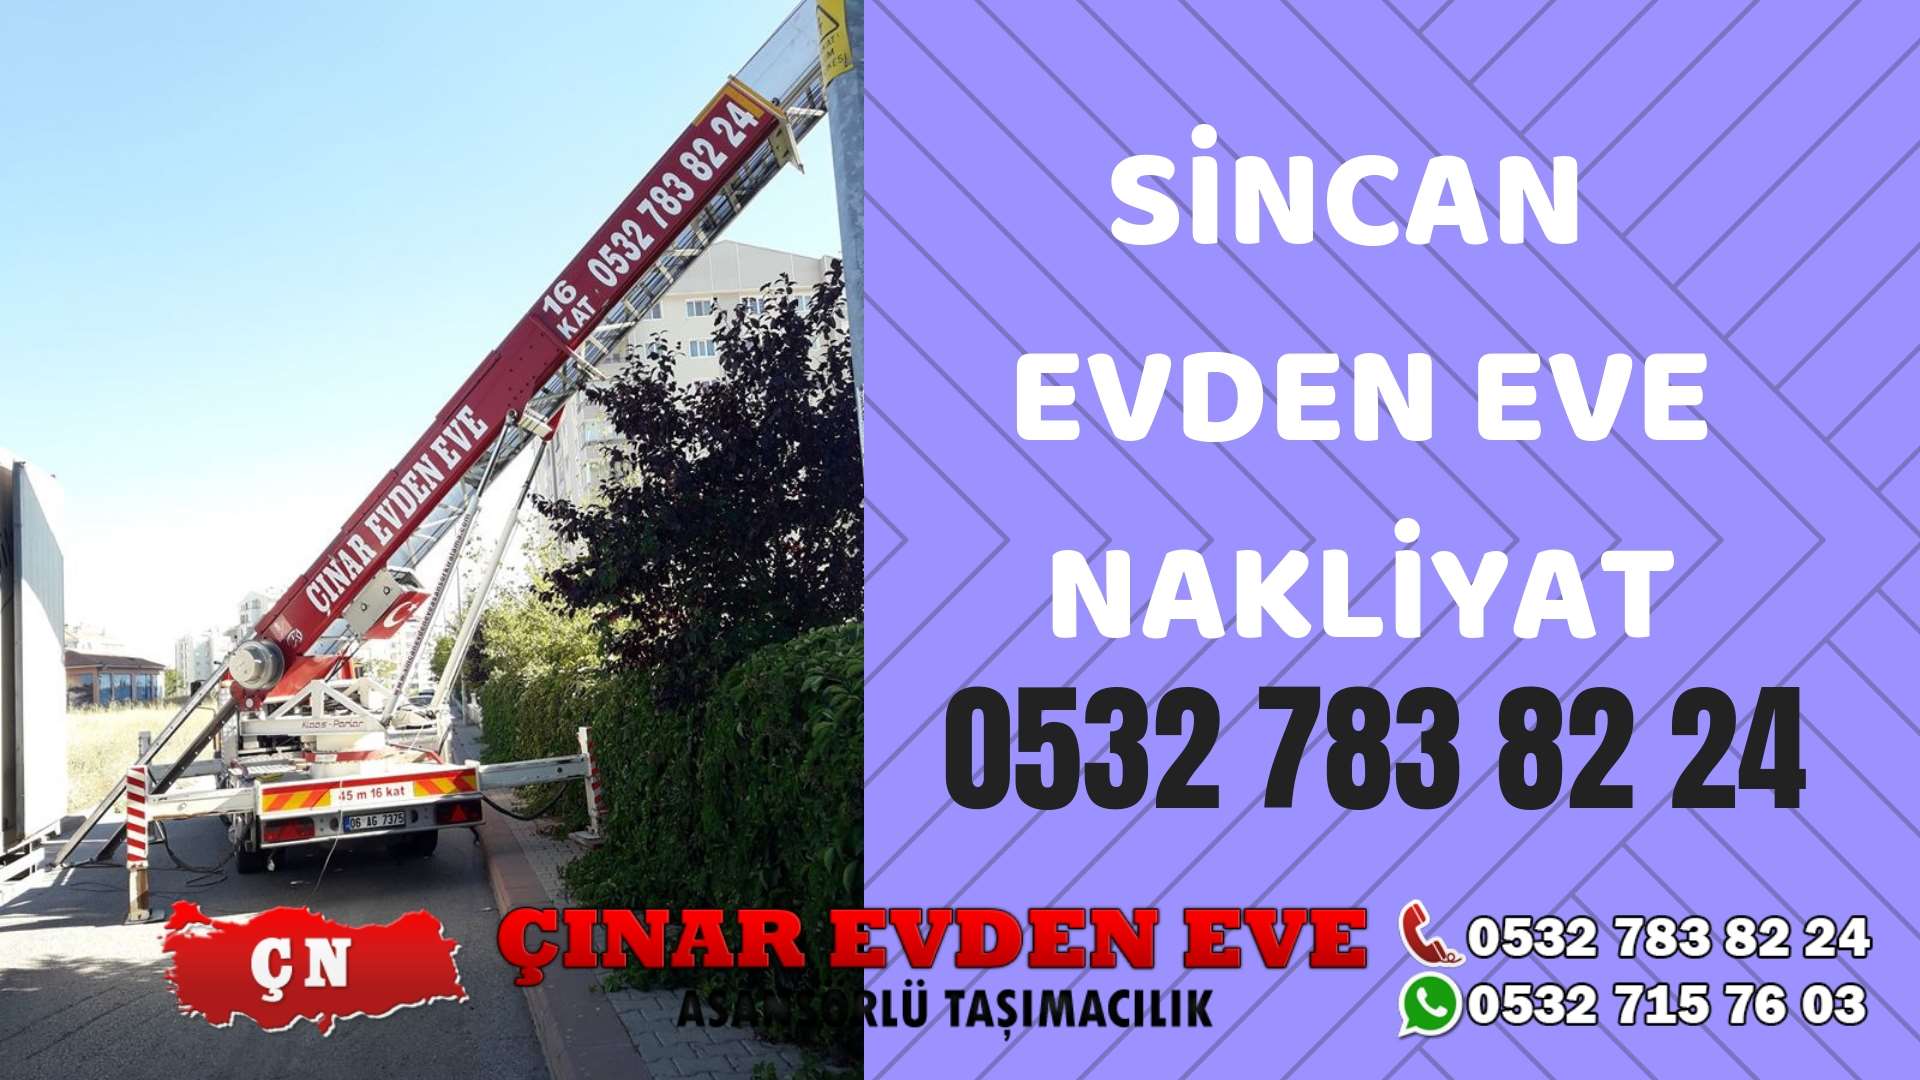 Ankara Etimesgut Sincan evden eve asansörlü nakliyat en ucuz nakliye 0532 715 76 03